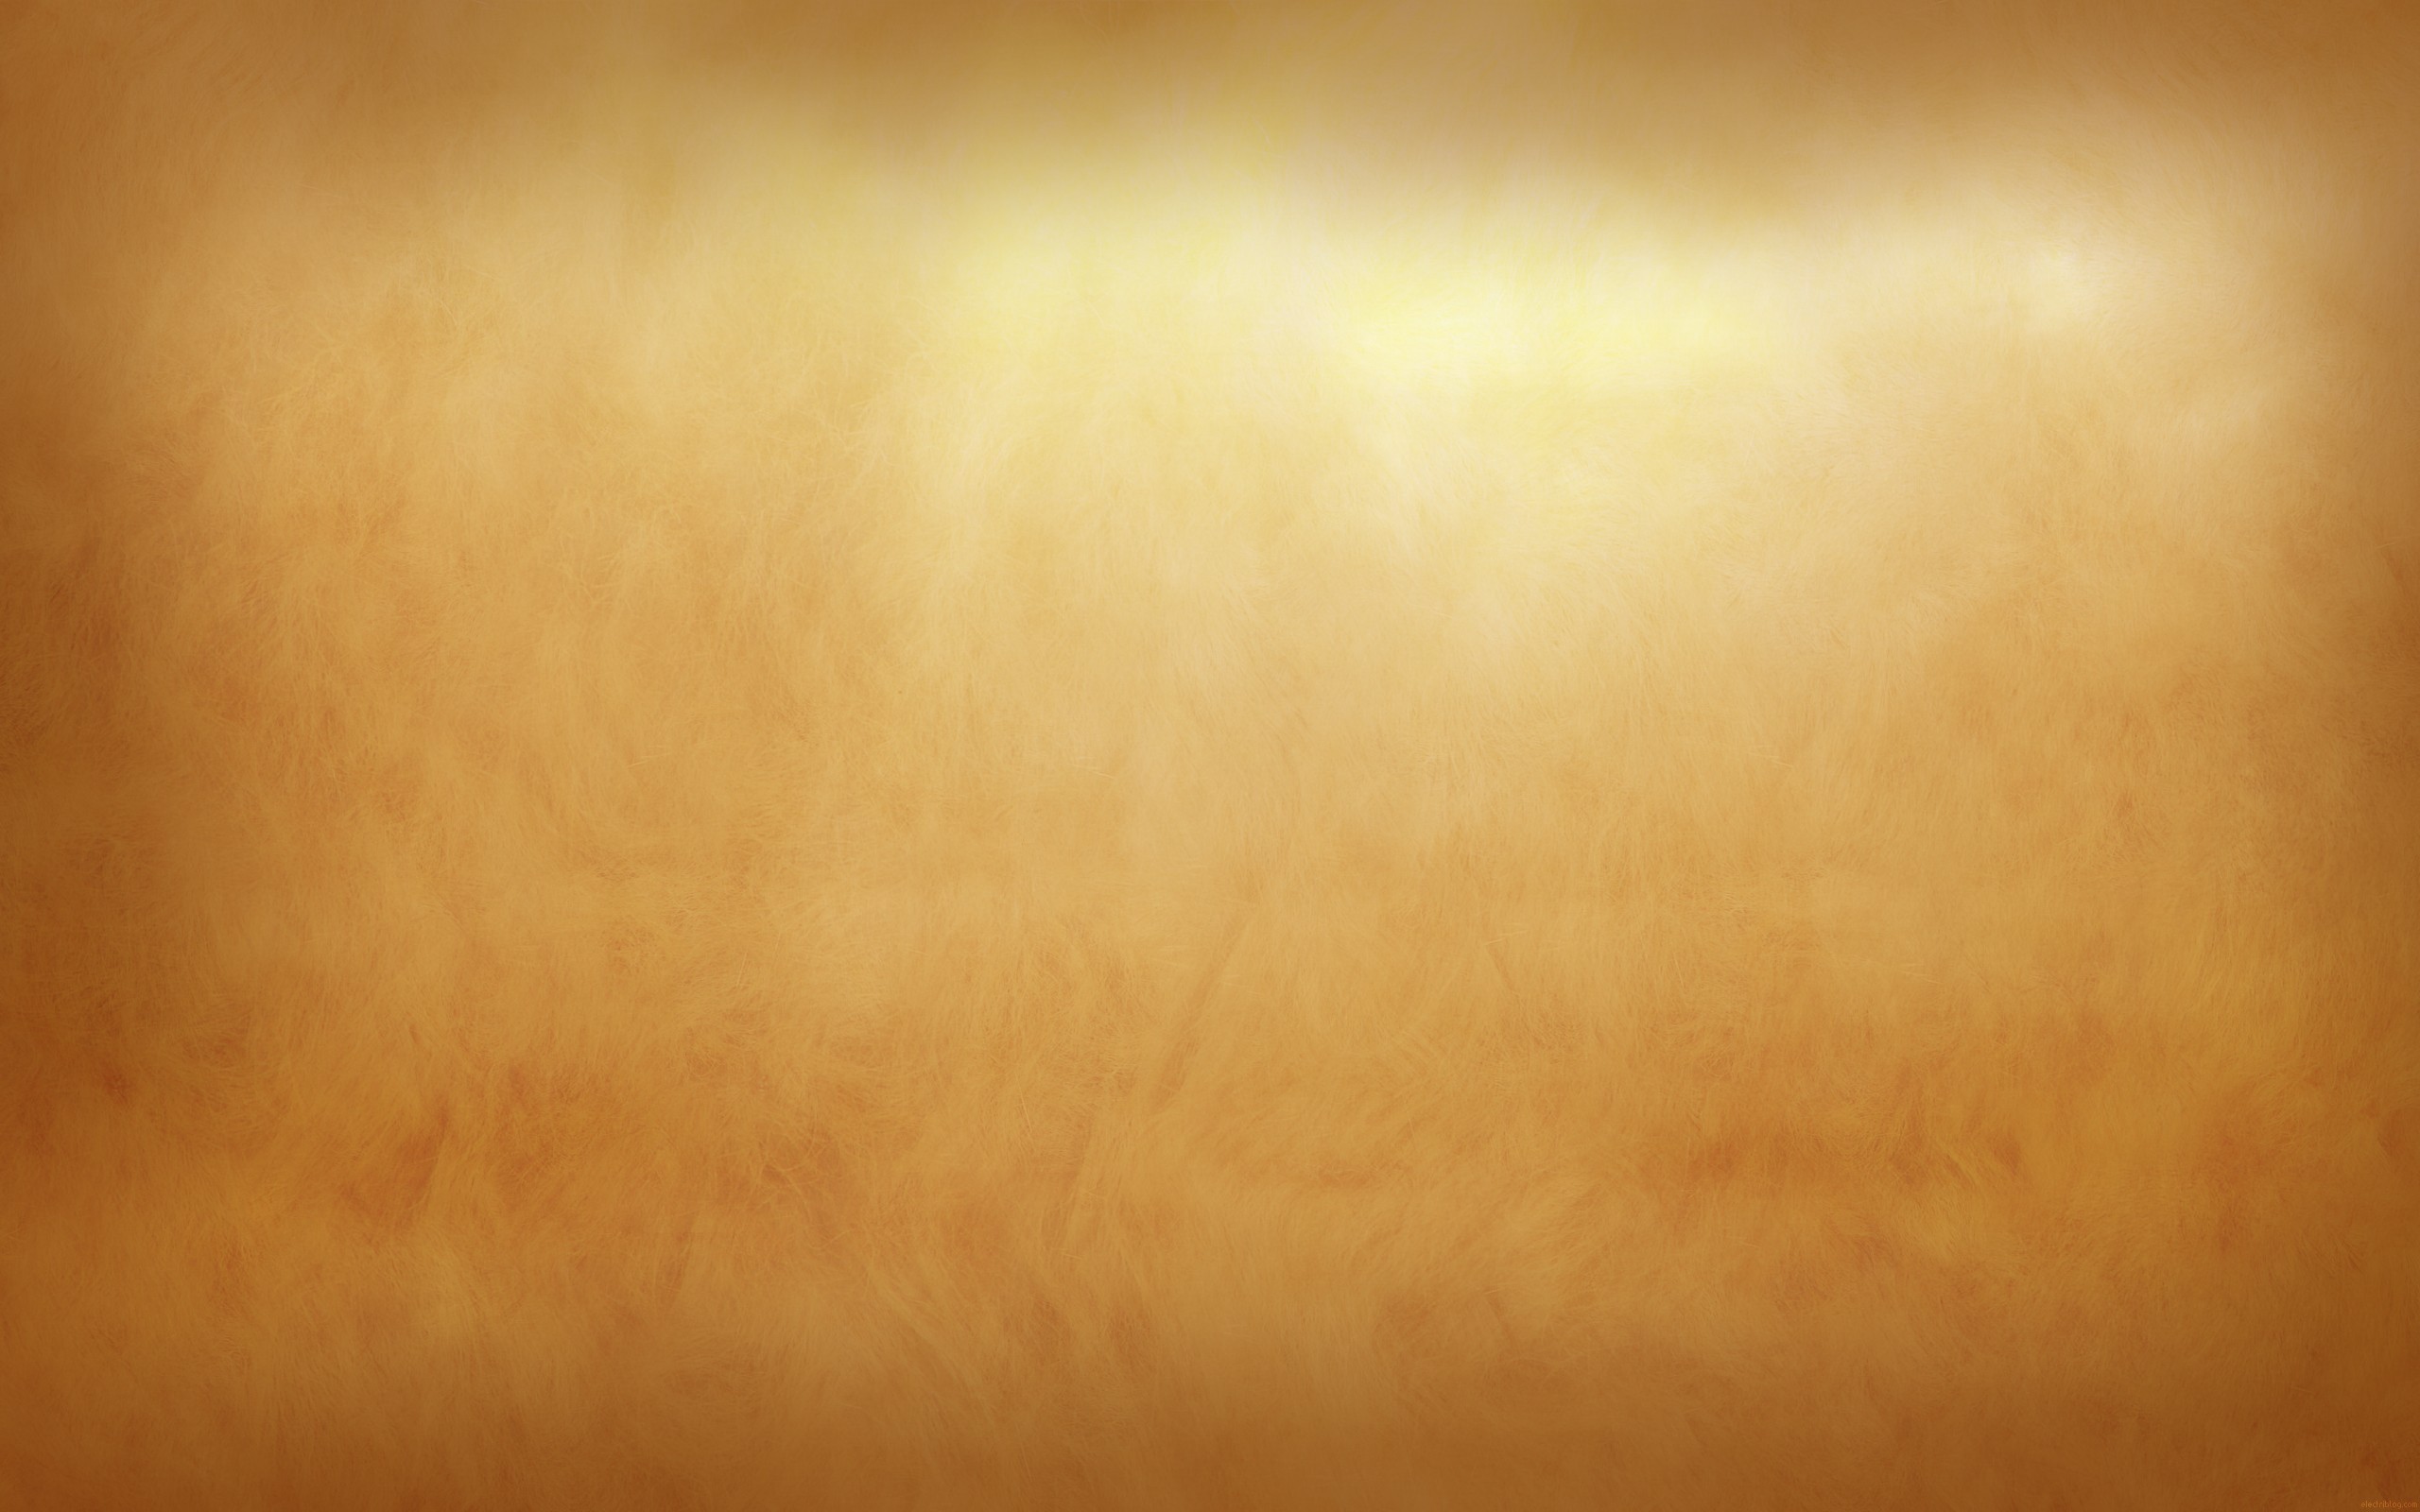 Một chiếc phụ kiện trang trí bằng nền vàng cổ điển sẽ làm cho bất kỳ không gian nào trở nên lung linh và độc đáo. Với sự kết hợp giữa màu vàng và đen, chiếc đèn chùm hoặc tranh cổ điển sẽ trở thành tâm điểm thu hút sự chú ý của mọi người. Hãy khám phá những phụ kiện trang trí nền vàng cổ điển để tô điểm cho ngôi nhà của bạn.